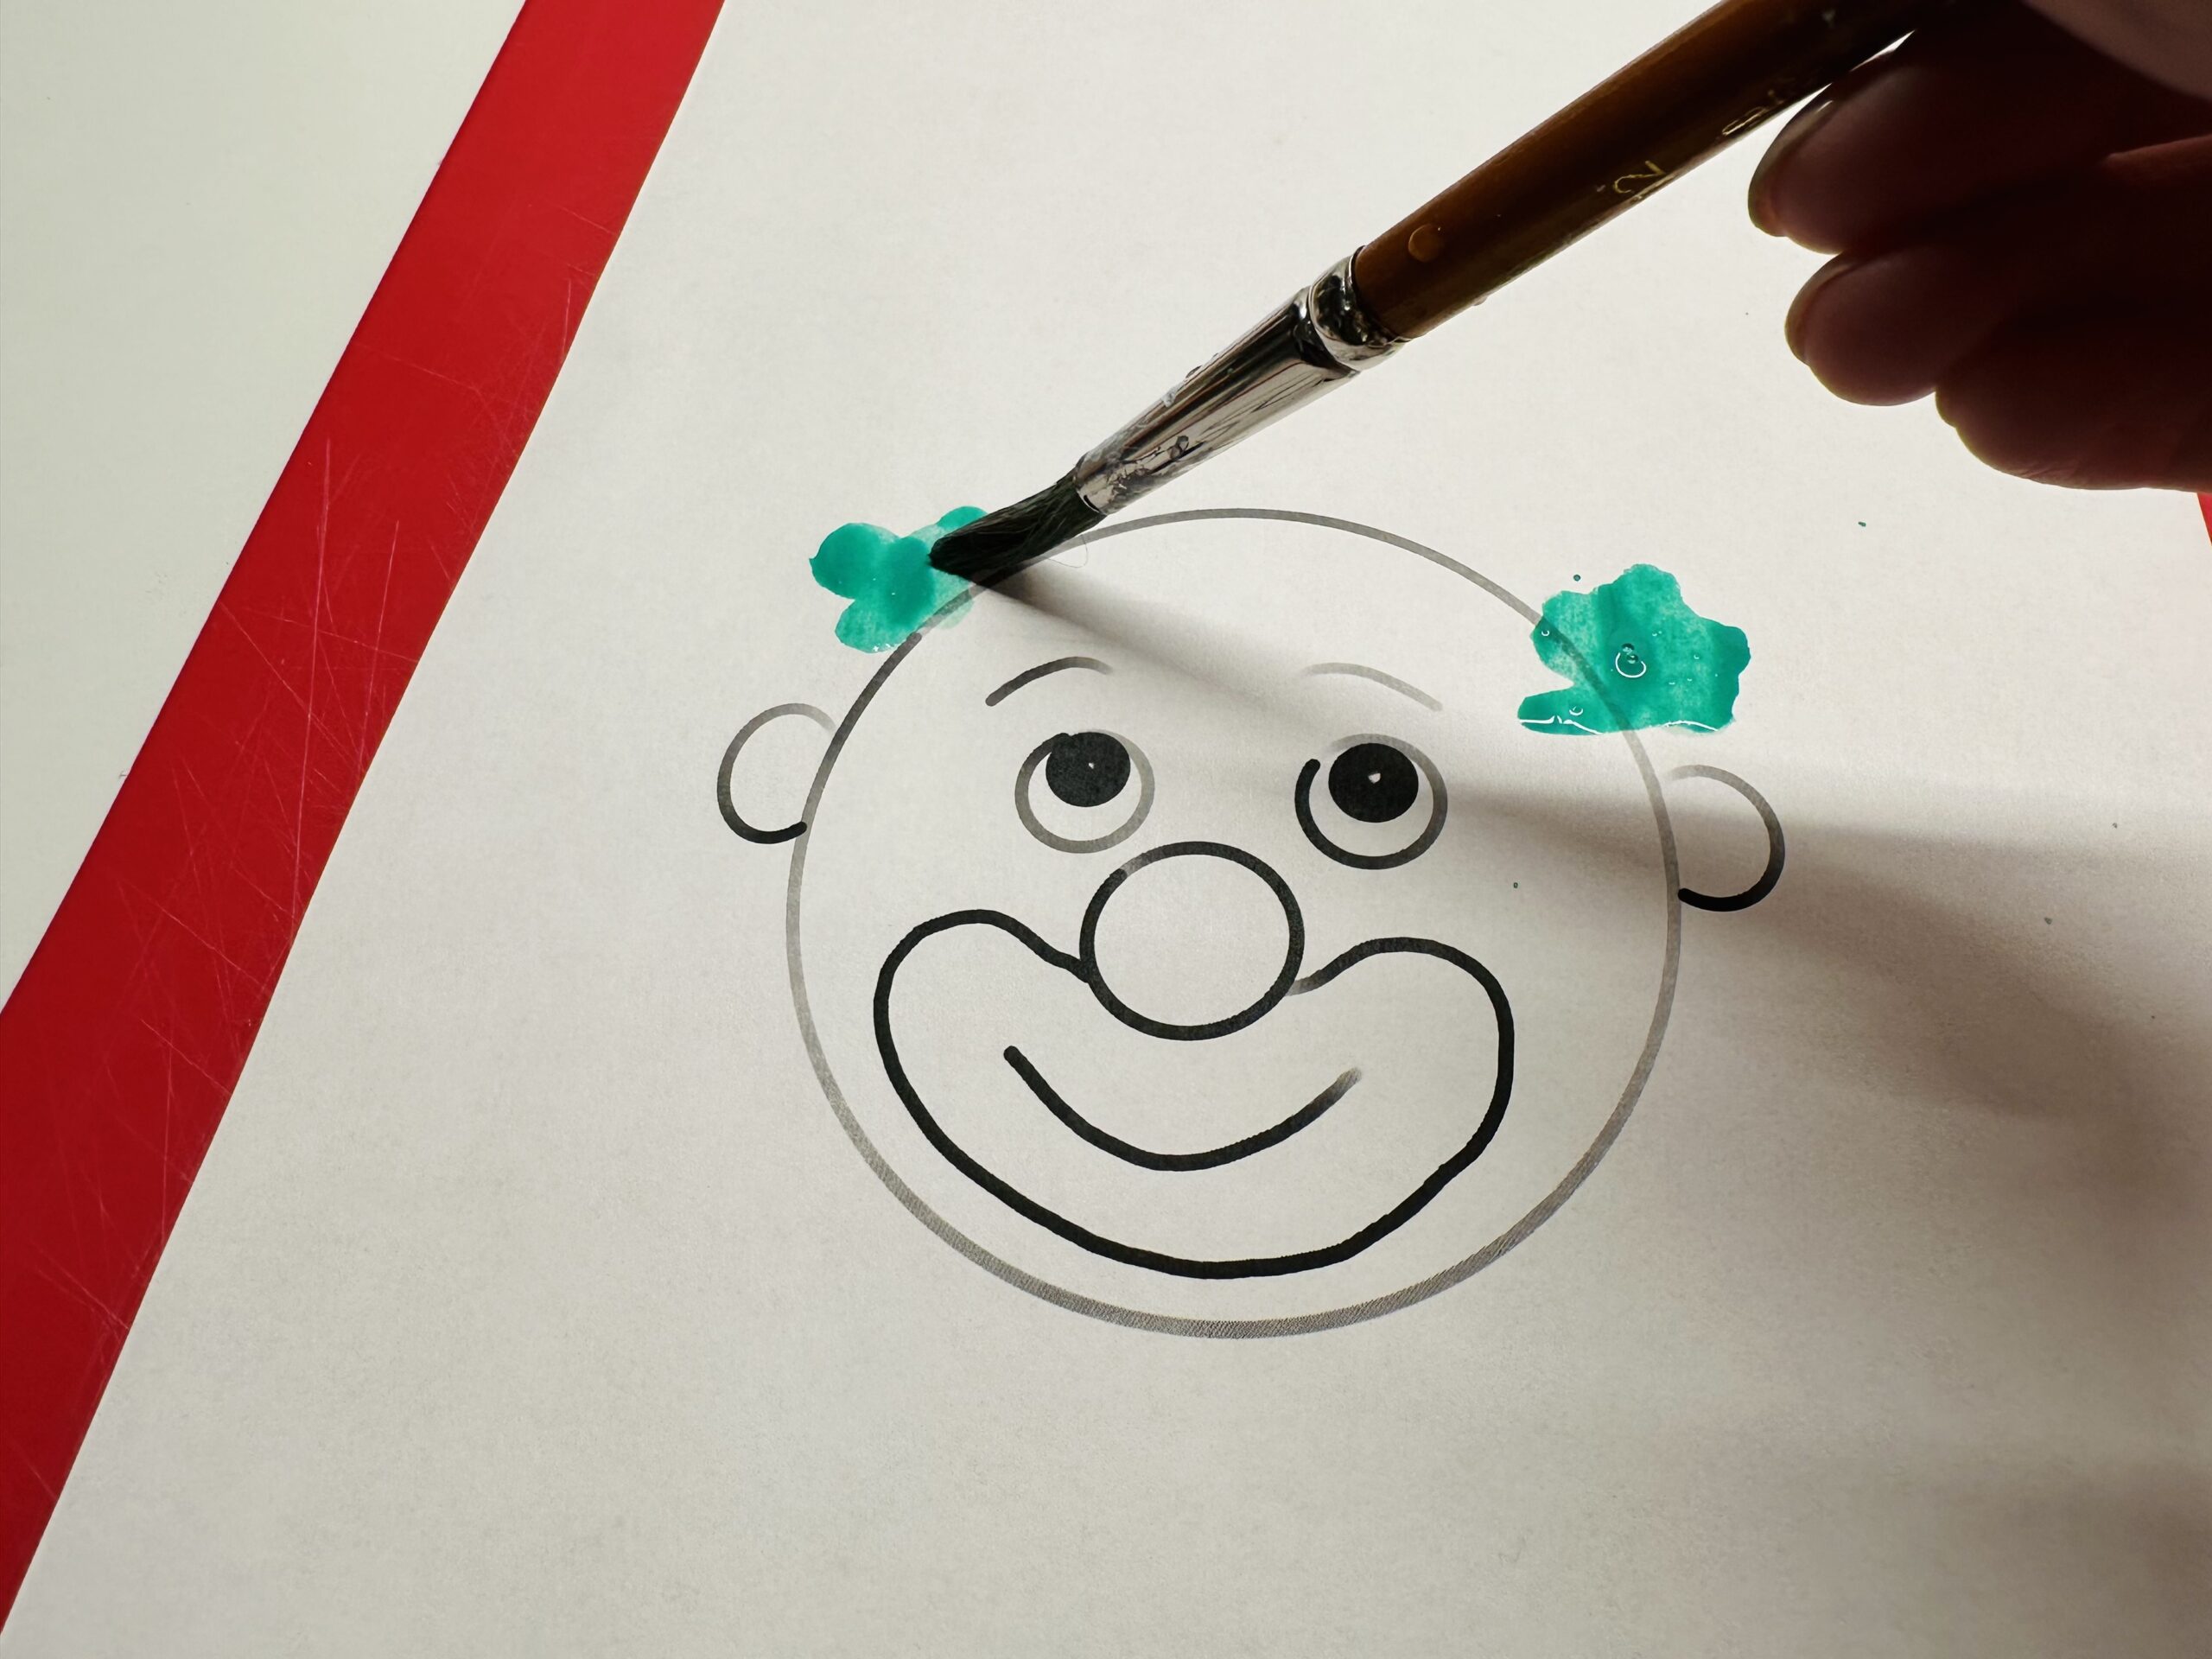 Bild zum Schritt 4 für das Bastel- und DIY-Abenteuer für Kinder: 'Malt mit dem Pinsel zwei Farbtupfer an den Clownkopf.'